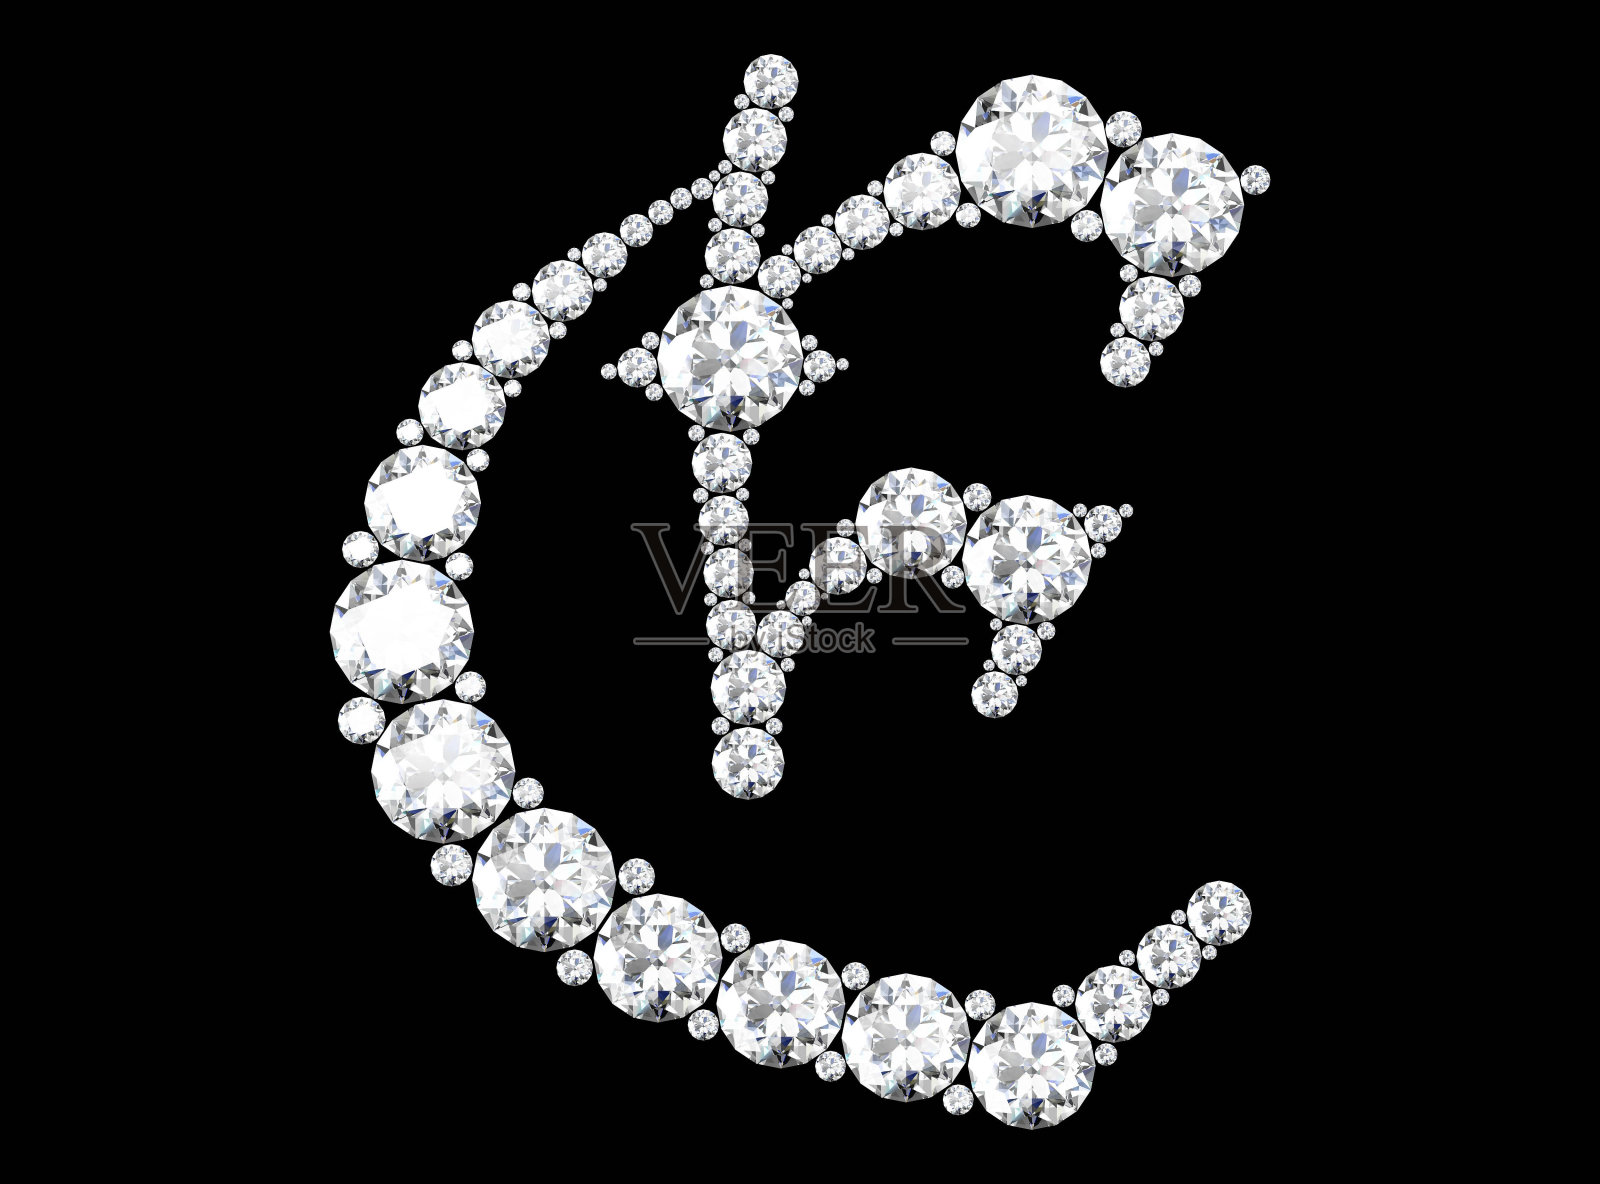 镶嵌宝石的钻石字母(高分辨率3D图像)照片摄影图片